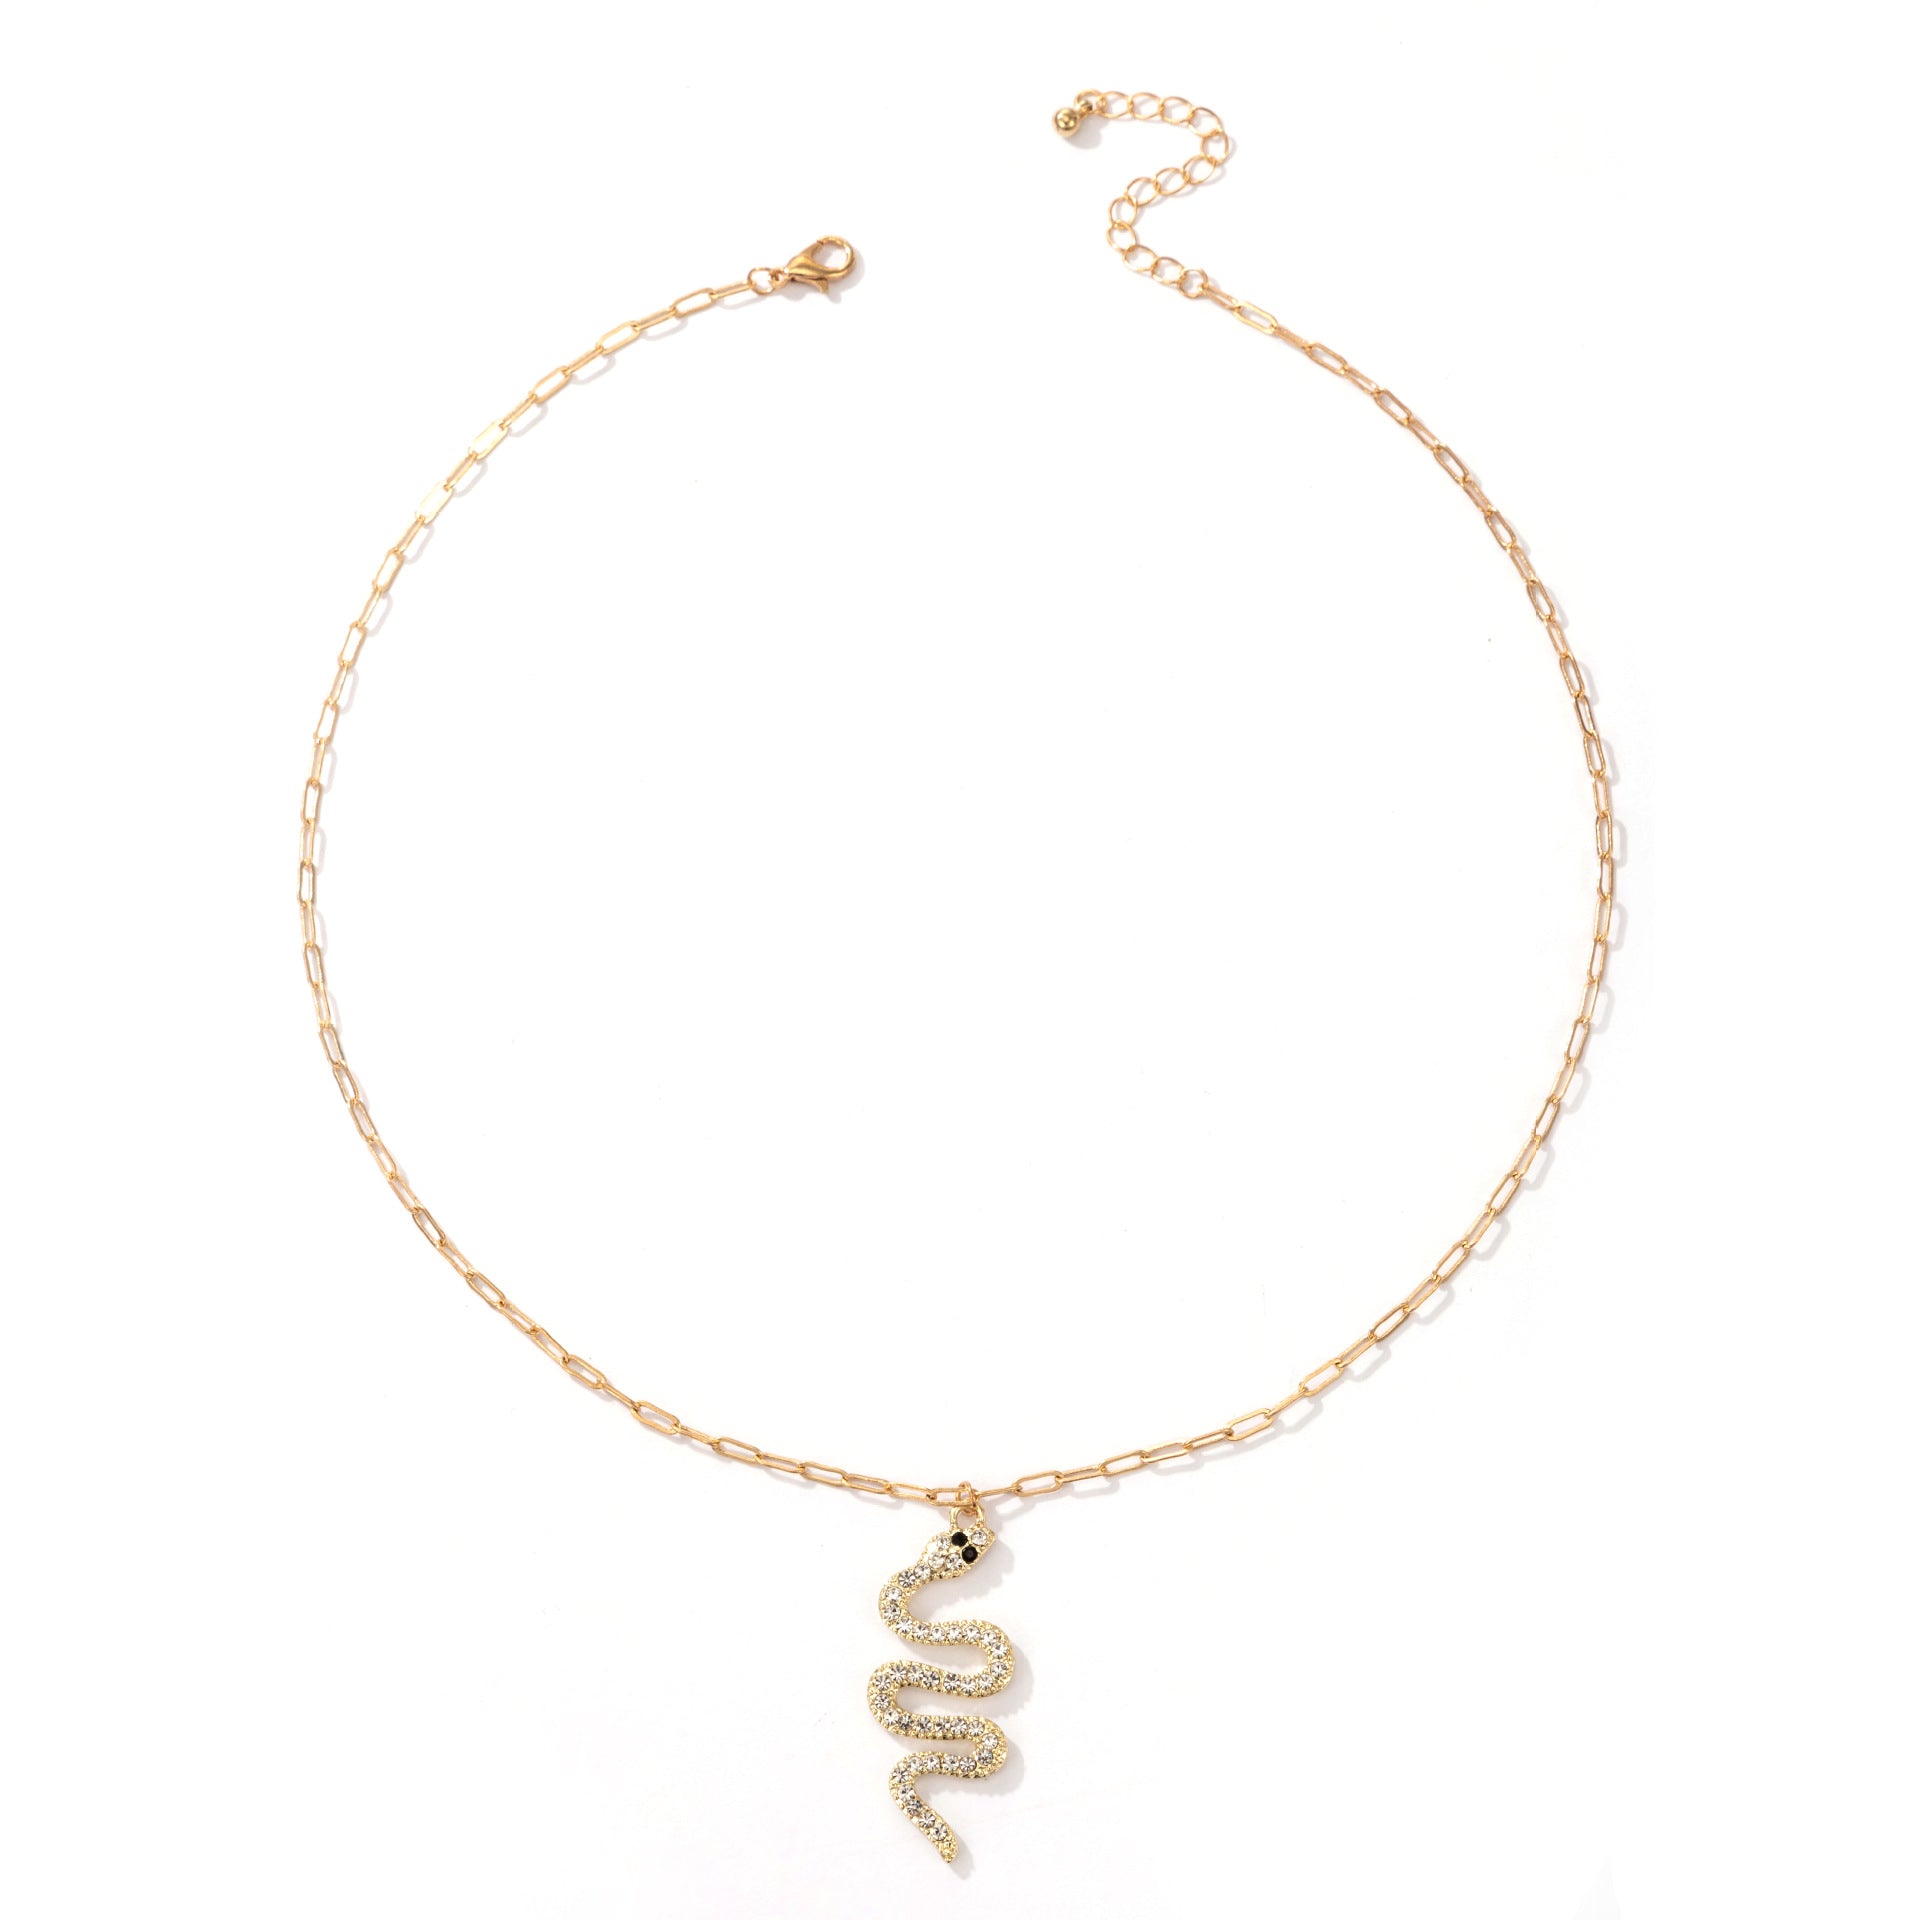 Arzonai  fashion jewelry snake-shaped element necklace personalized fashion golden retro snake pendant